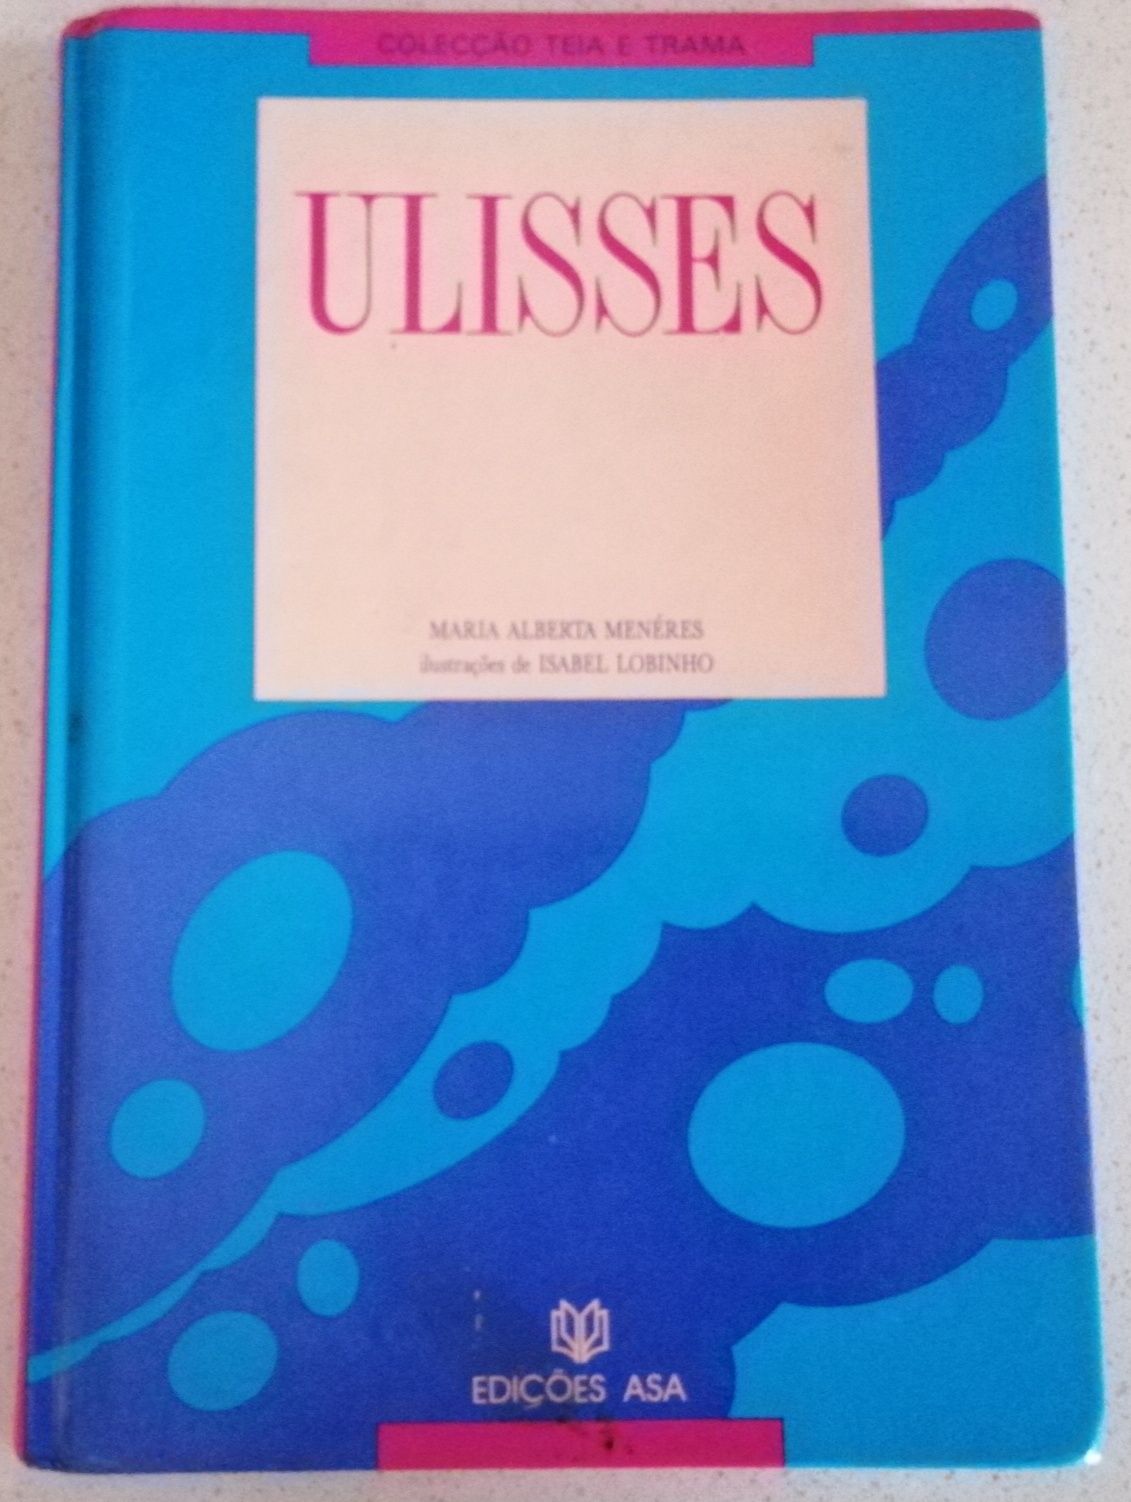 Livro "Ulisses", de Maria Alberta Meneres, Edições Asa.